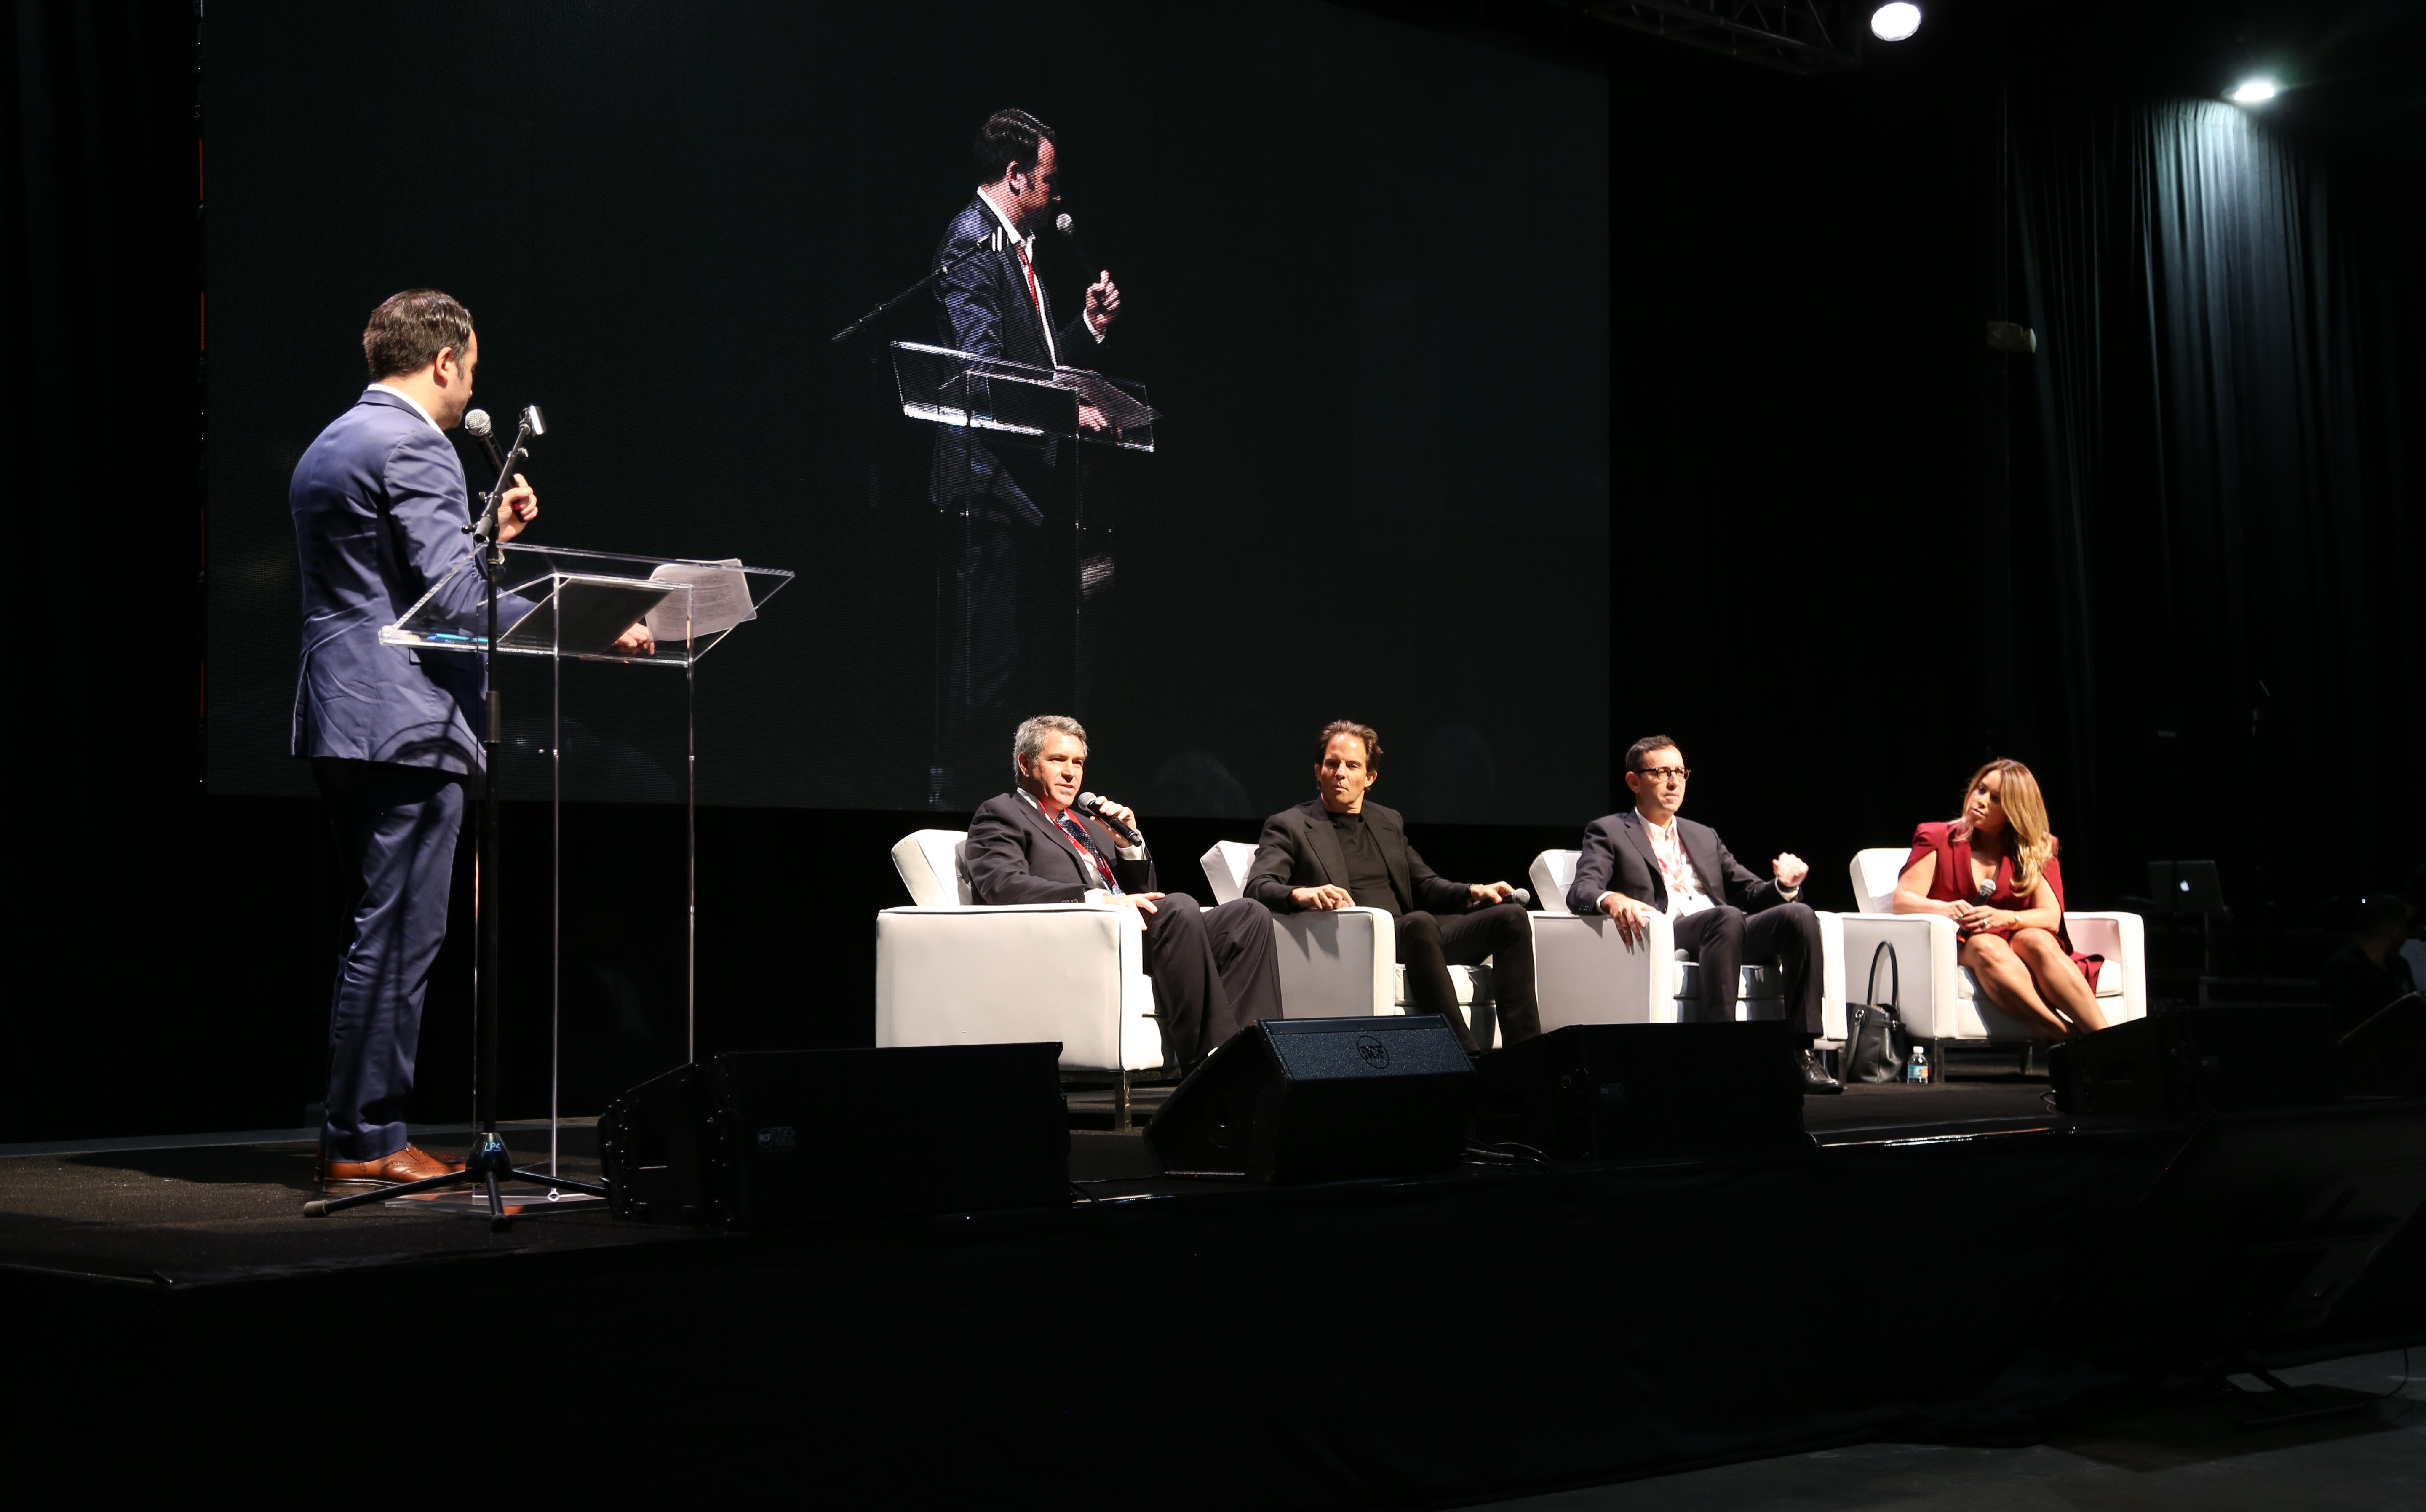 From left: Stuart Elliott, Jerome Hollo, Michael Shvo, Laurent Morali and Lissette Calderon